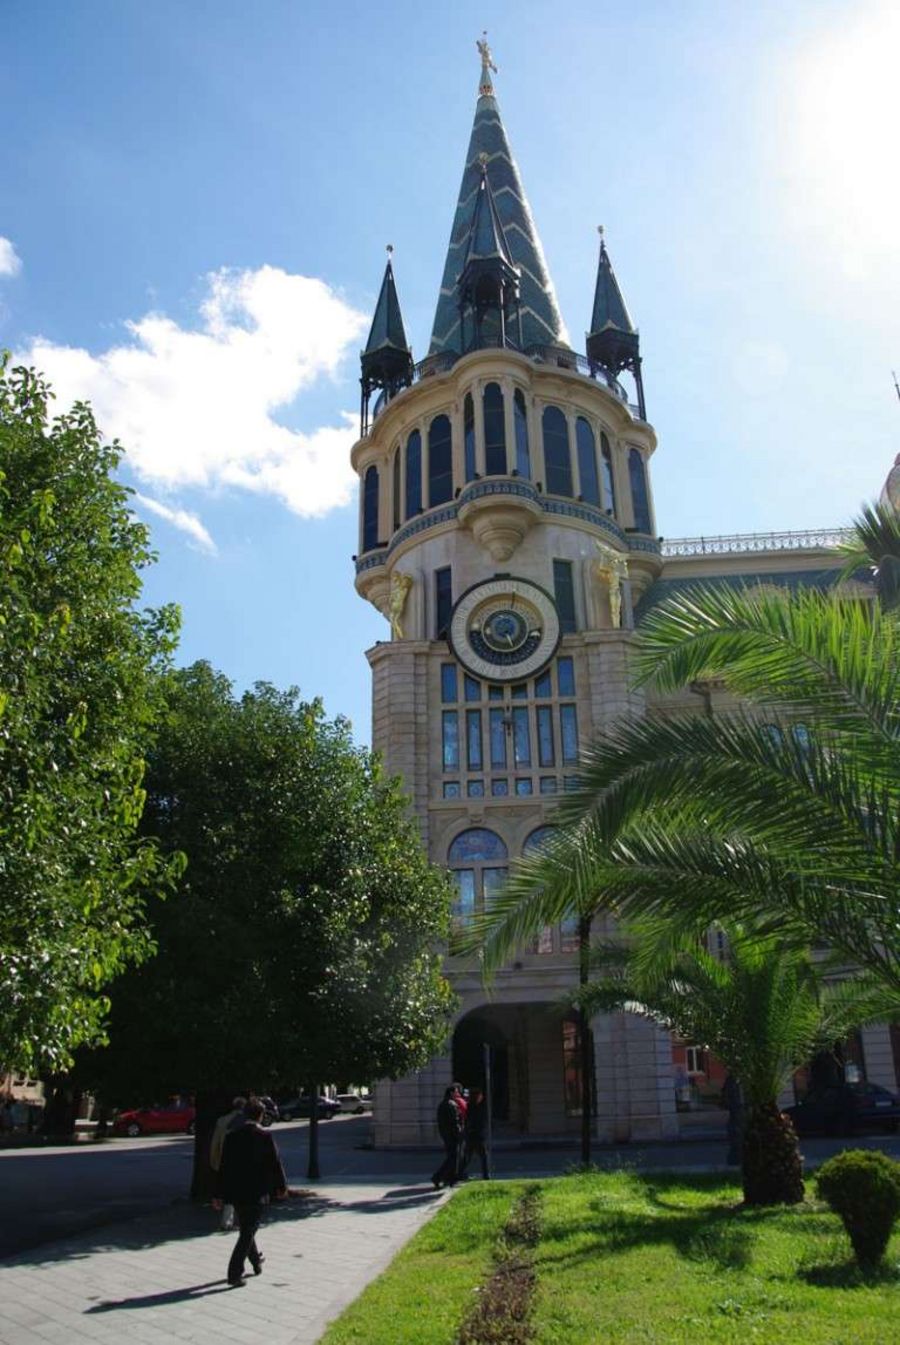 Eine der ungewöhnlichsten von Perrot geschaffenen Turmuhren: die astronomische Uhr im georgischen Batumi